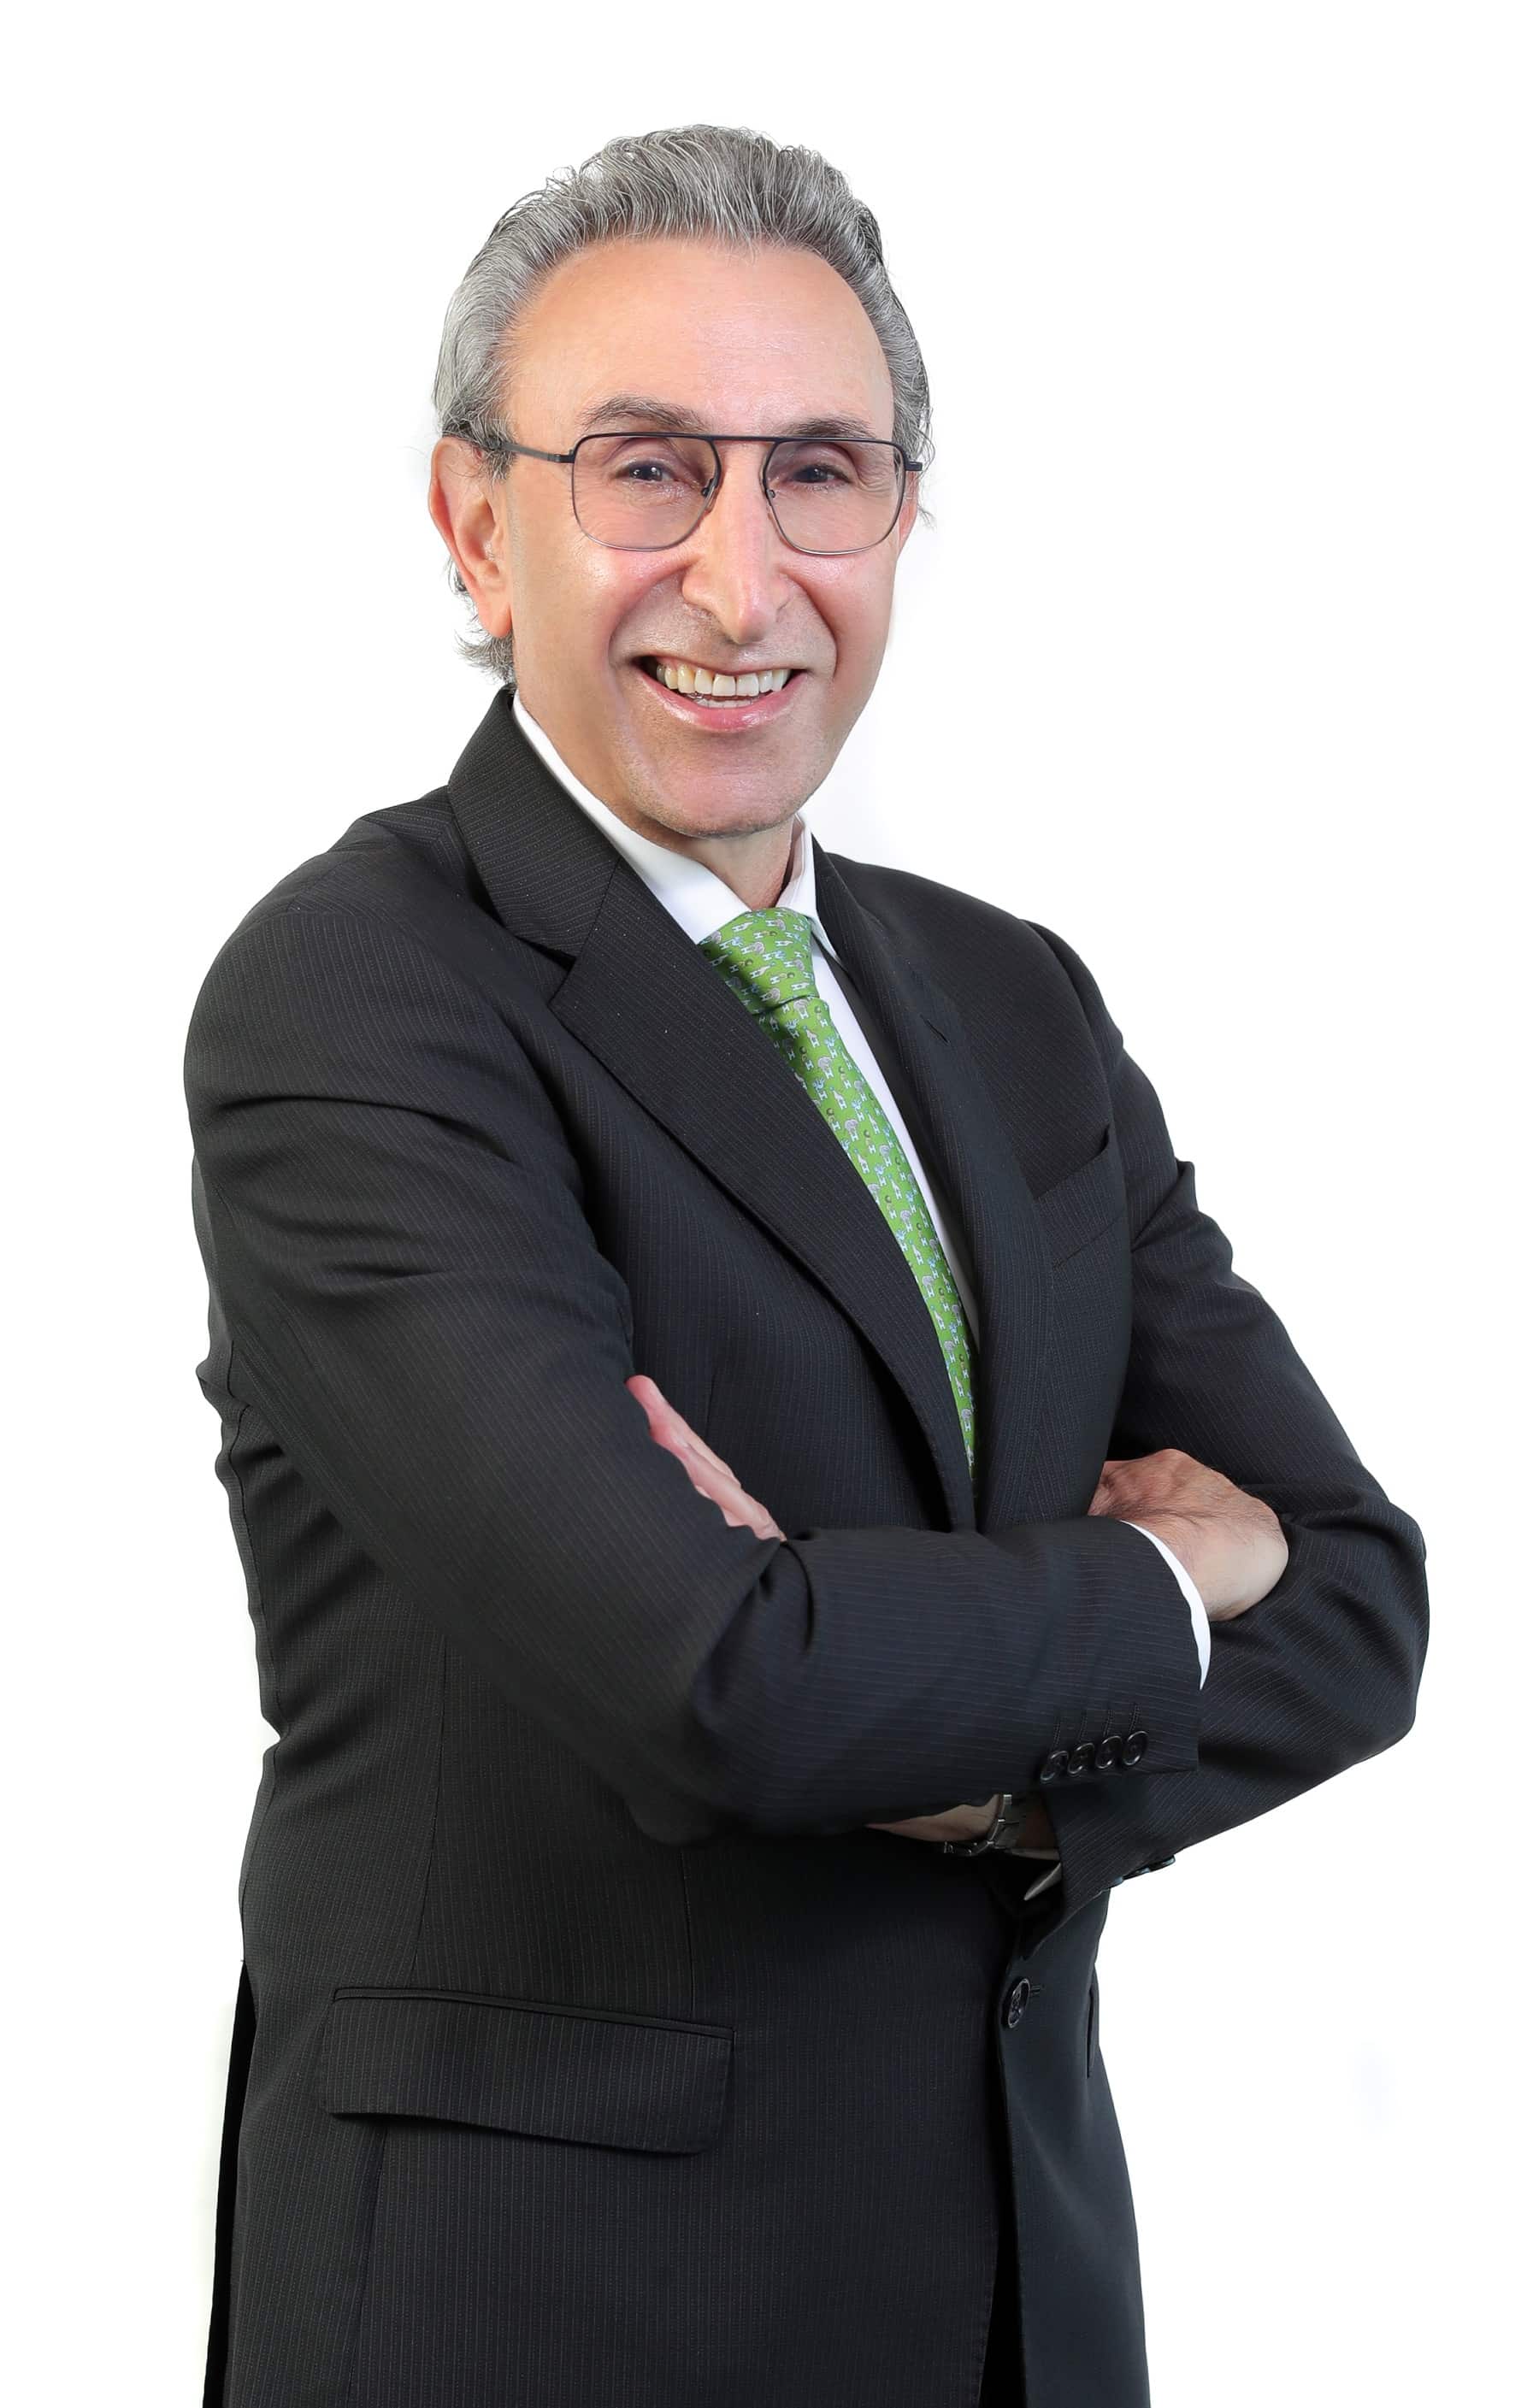 Dr. Youssef Frederick Maalouf